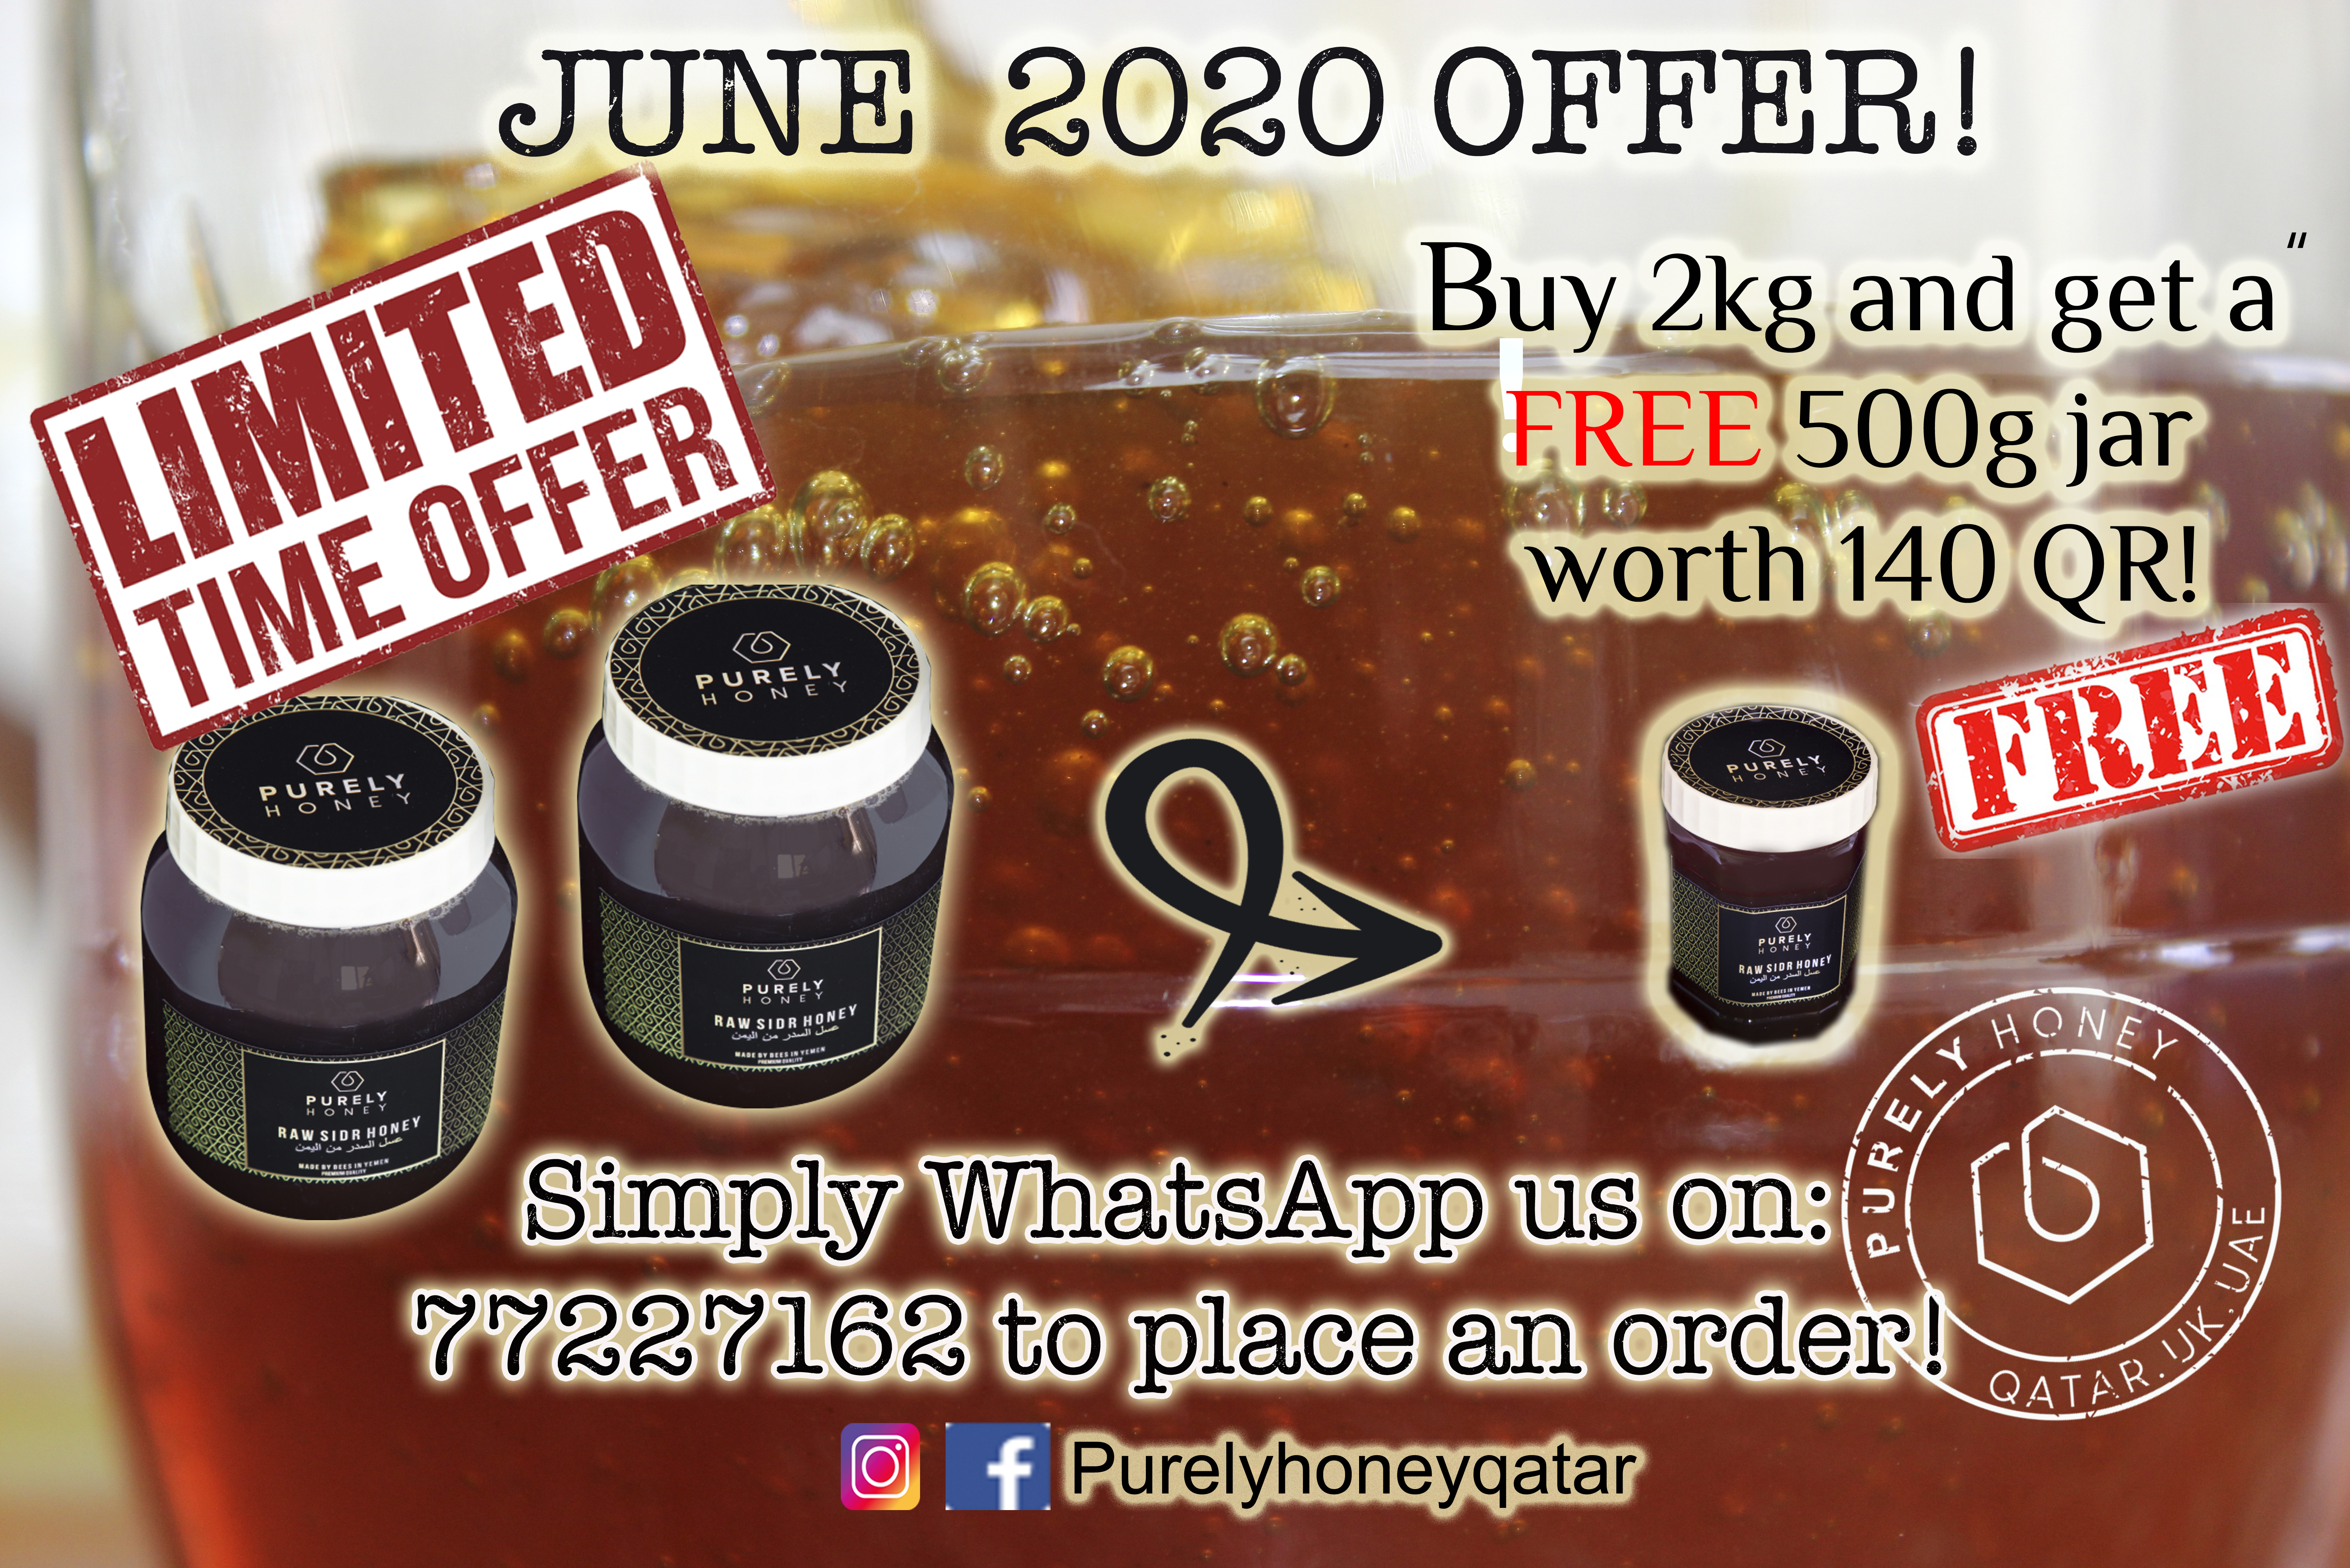 June 20 offer